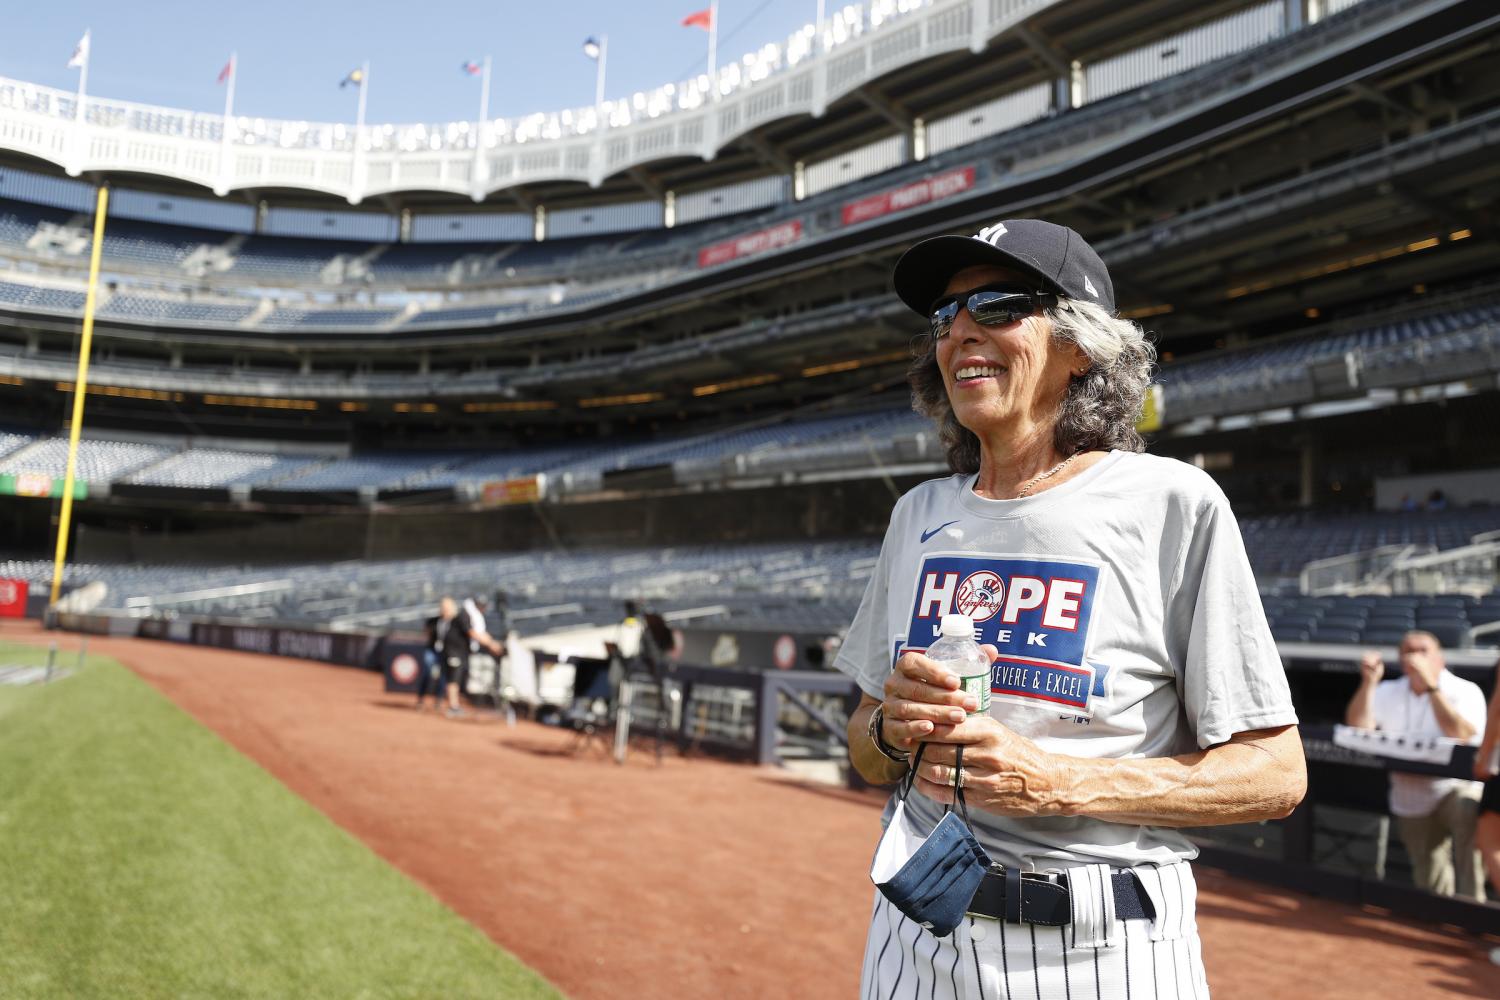 Gwen Goldman on the field during Yankees' HOPE Week